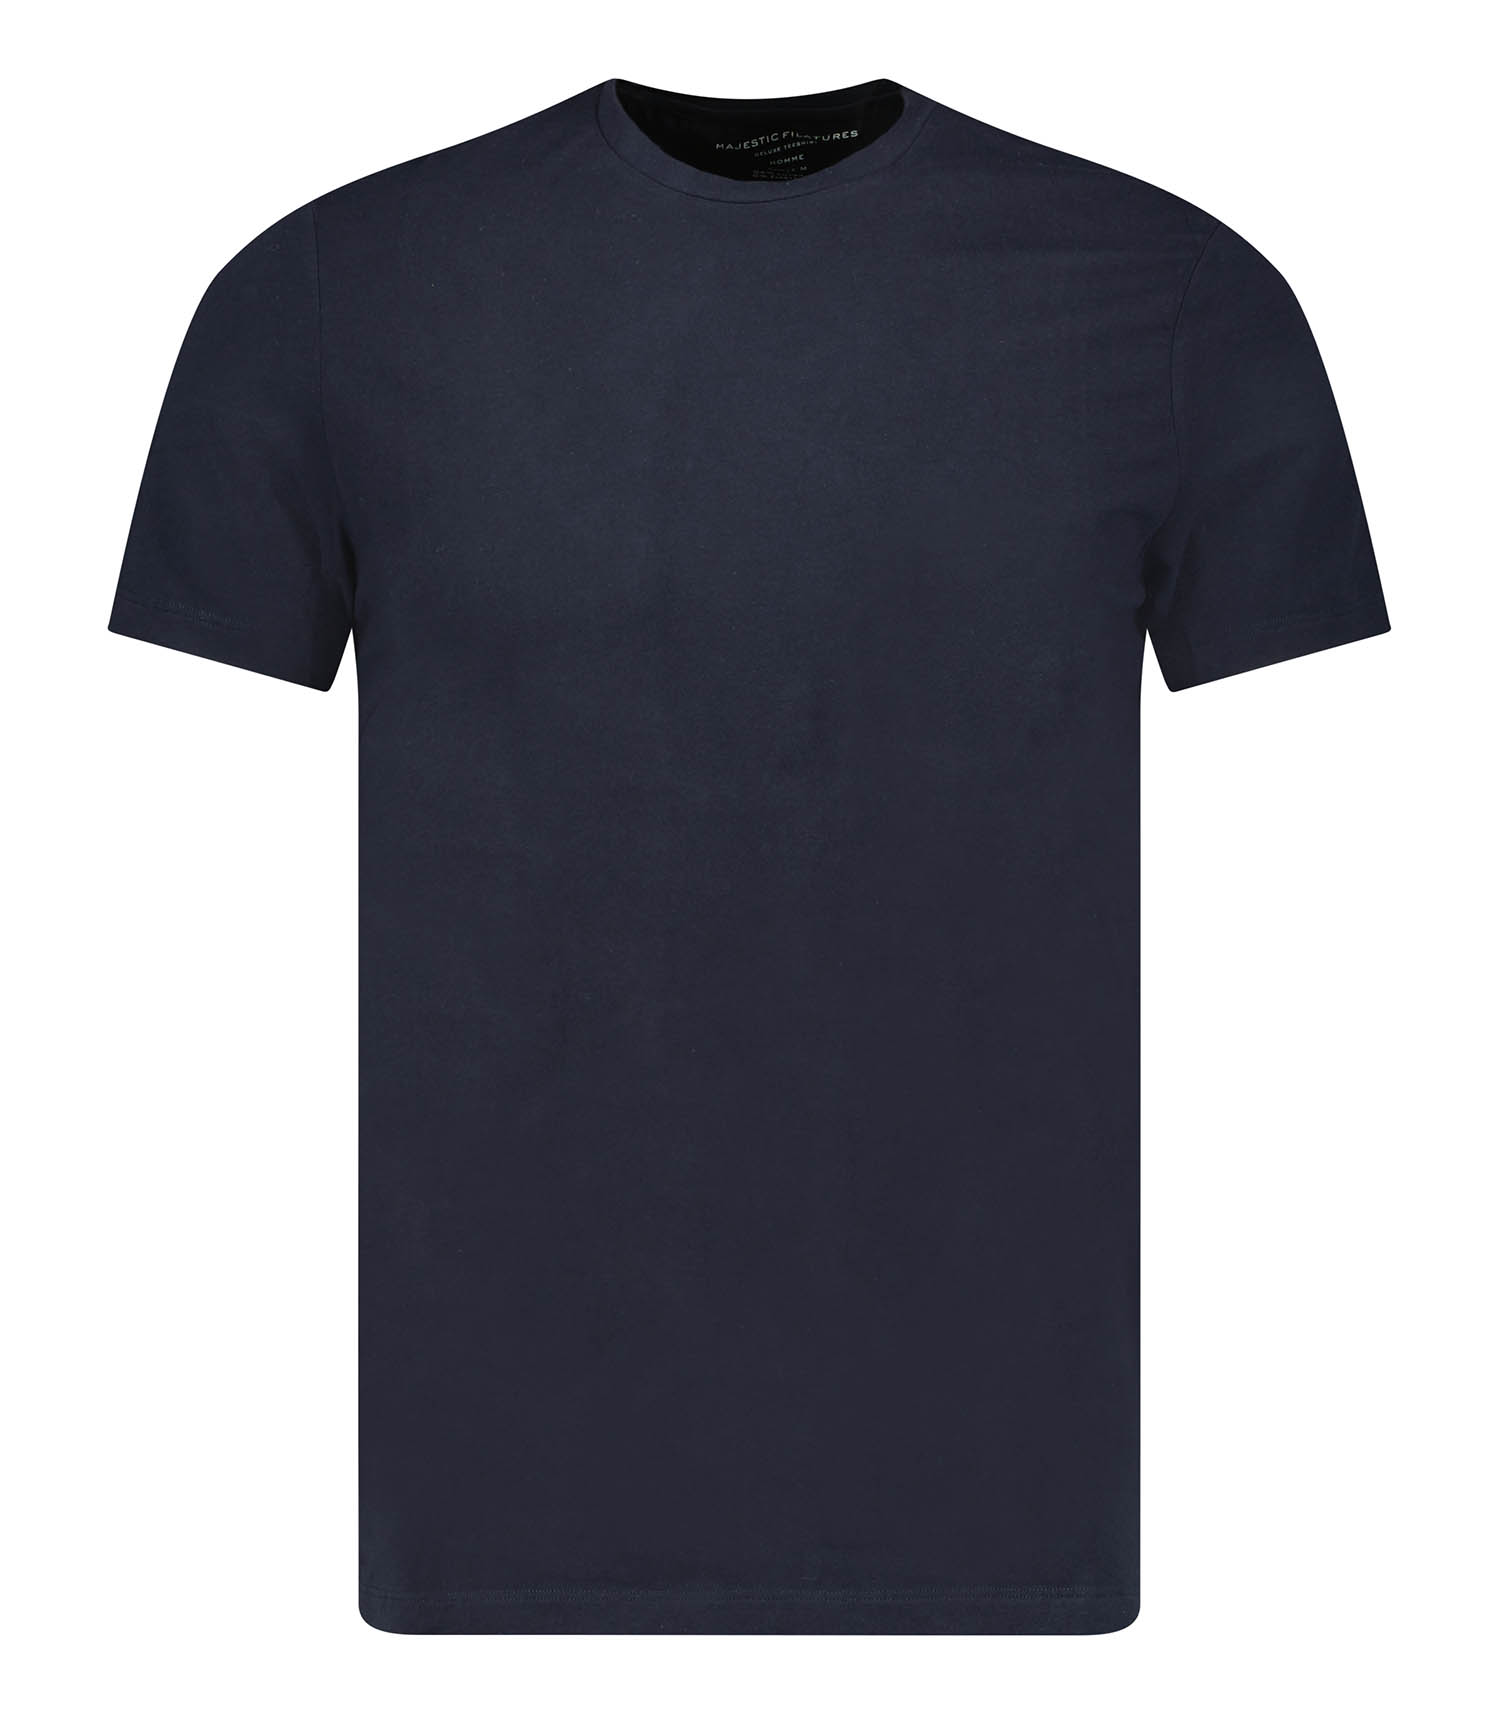 T-shirt Manches Courtes Col Ras Du Cou Pour Homme, En Coton, Idée